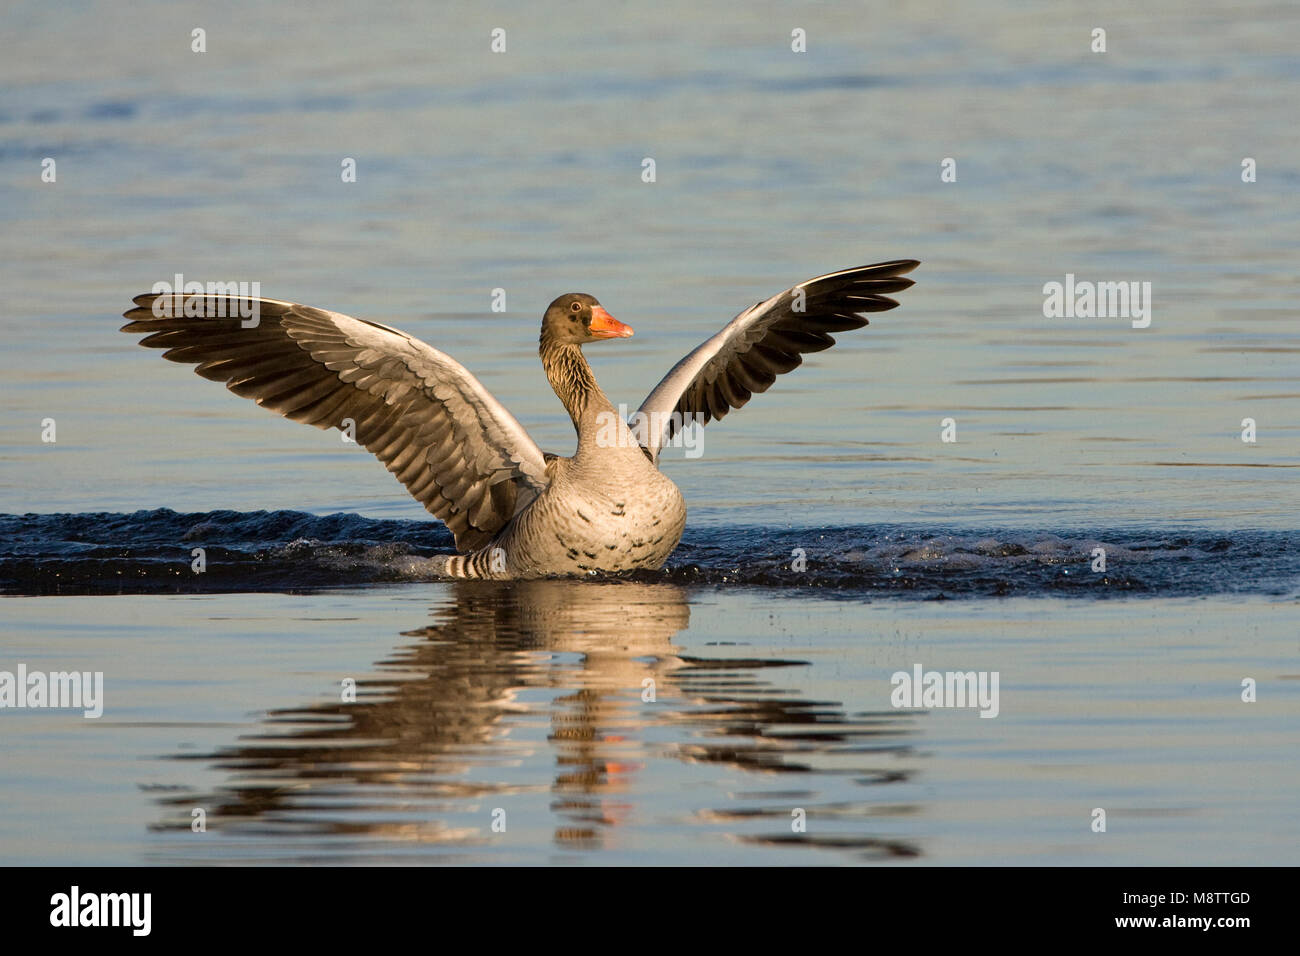 Grauwe Gans landend op l'eau ; grey-lag Goose landing on water Banque D'Images